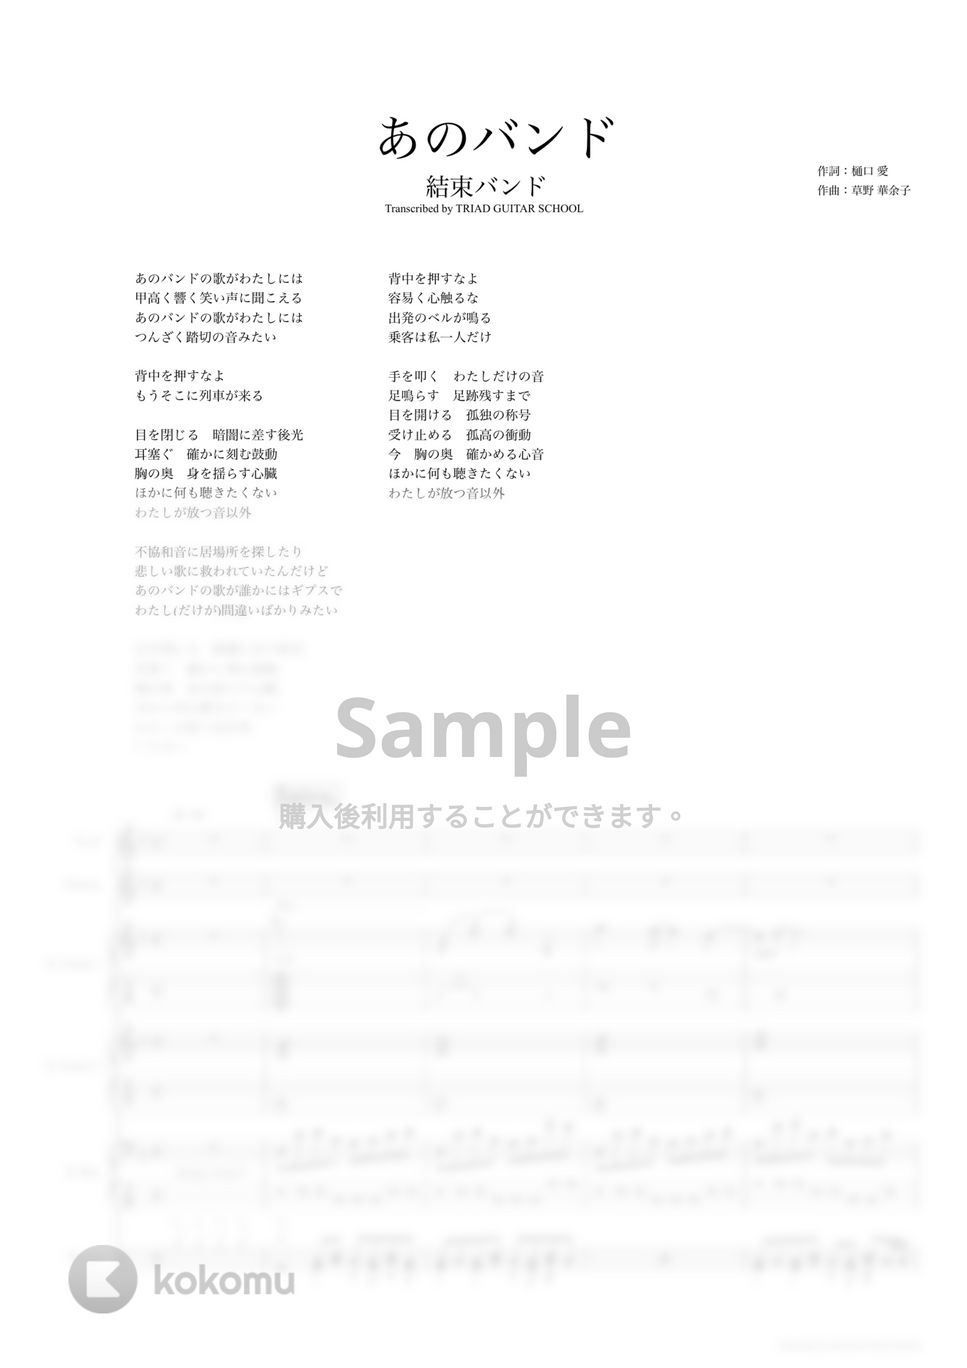 結束バンド - あのバンド (バンドスコア) by TRIAD GUITAR SCHOOL